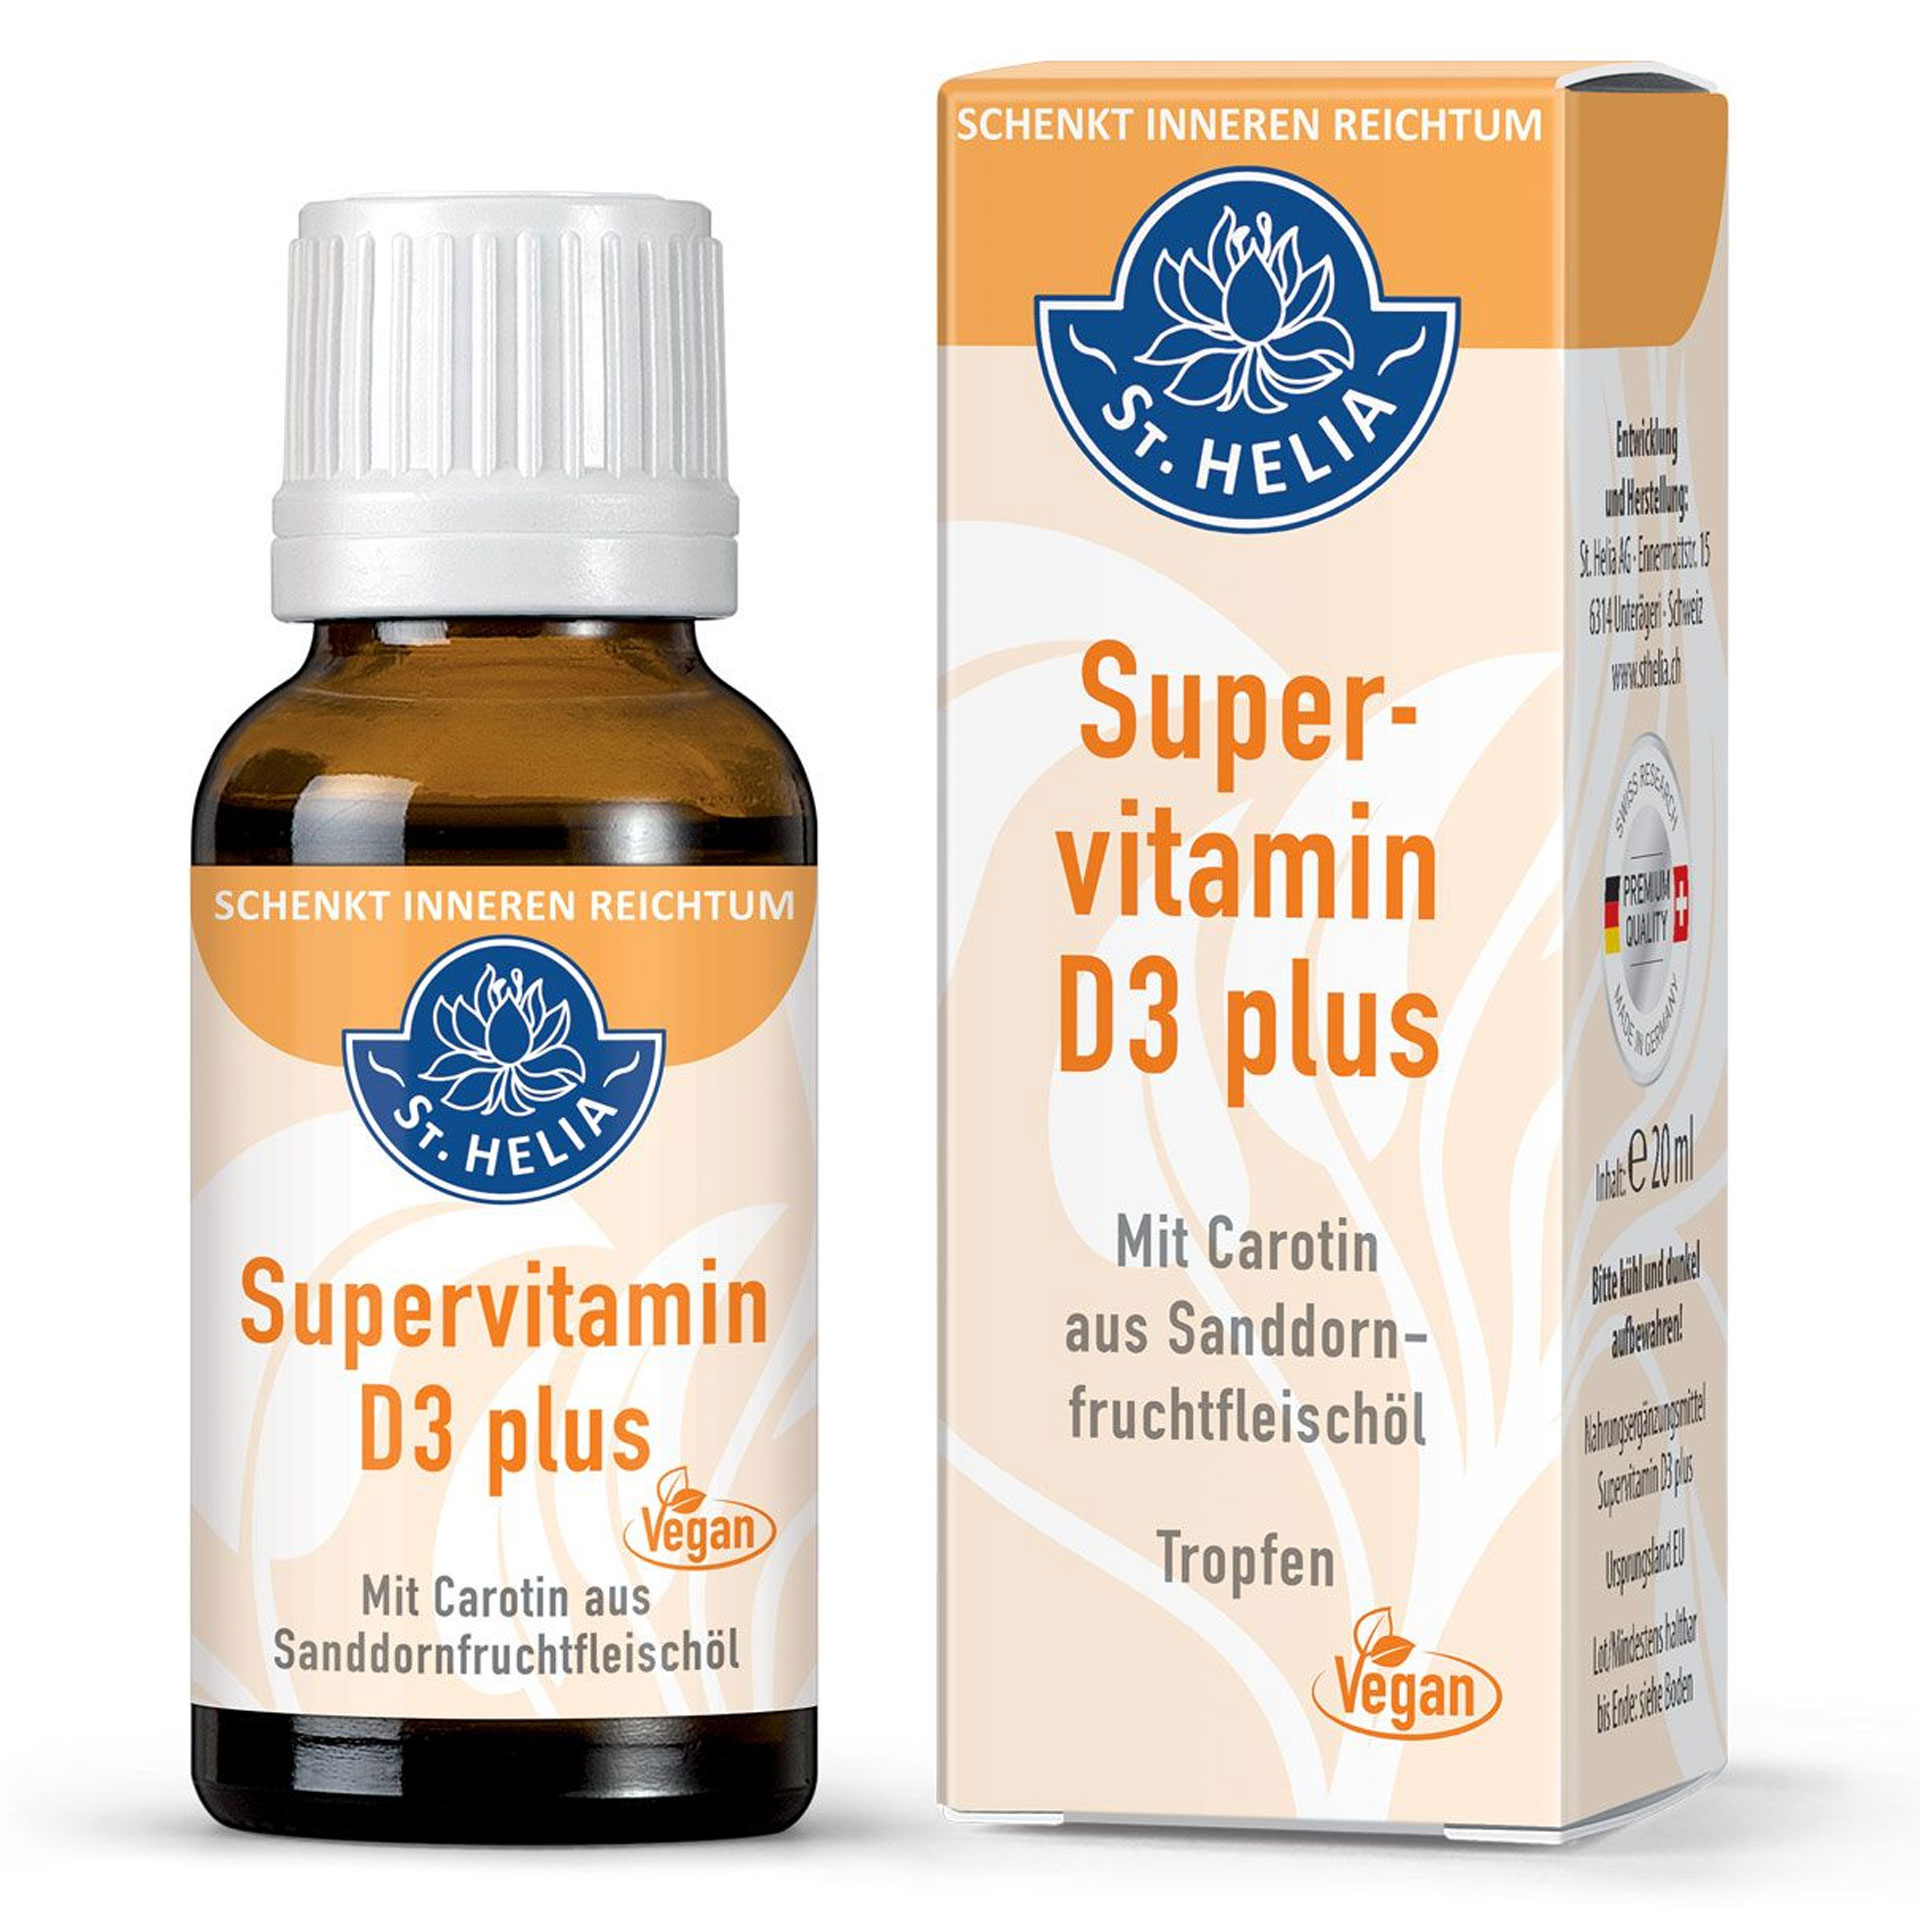 Super Vitamin D3 von St. Helia - 20ml